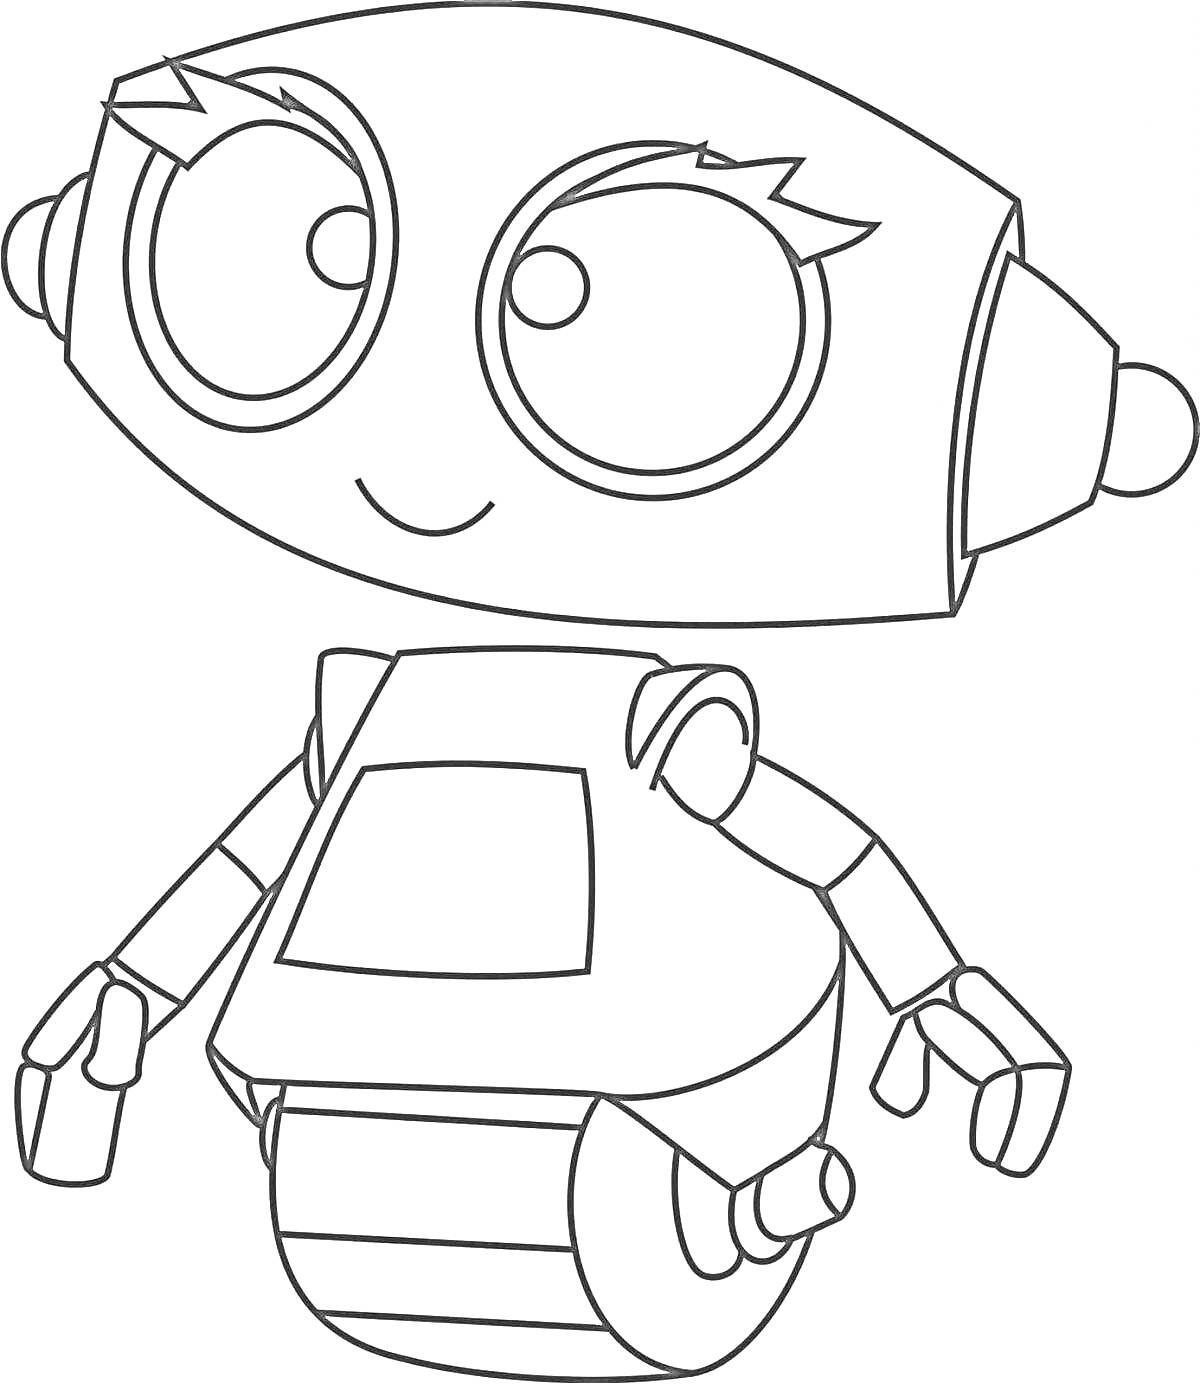 Раскраска Робот с большими глазами, антеннами по бокам головы, квадратным телом и колёсами вместо ног